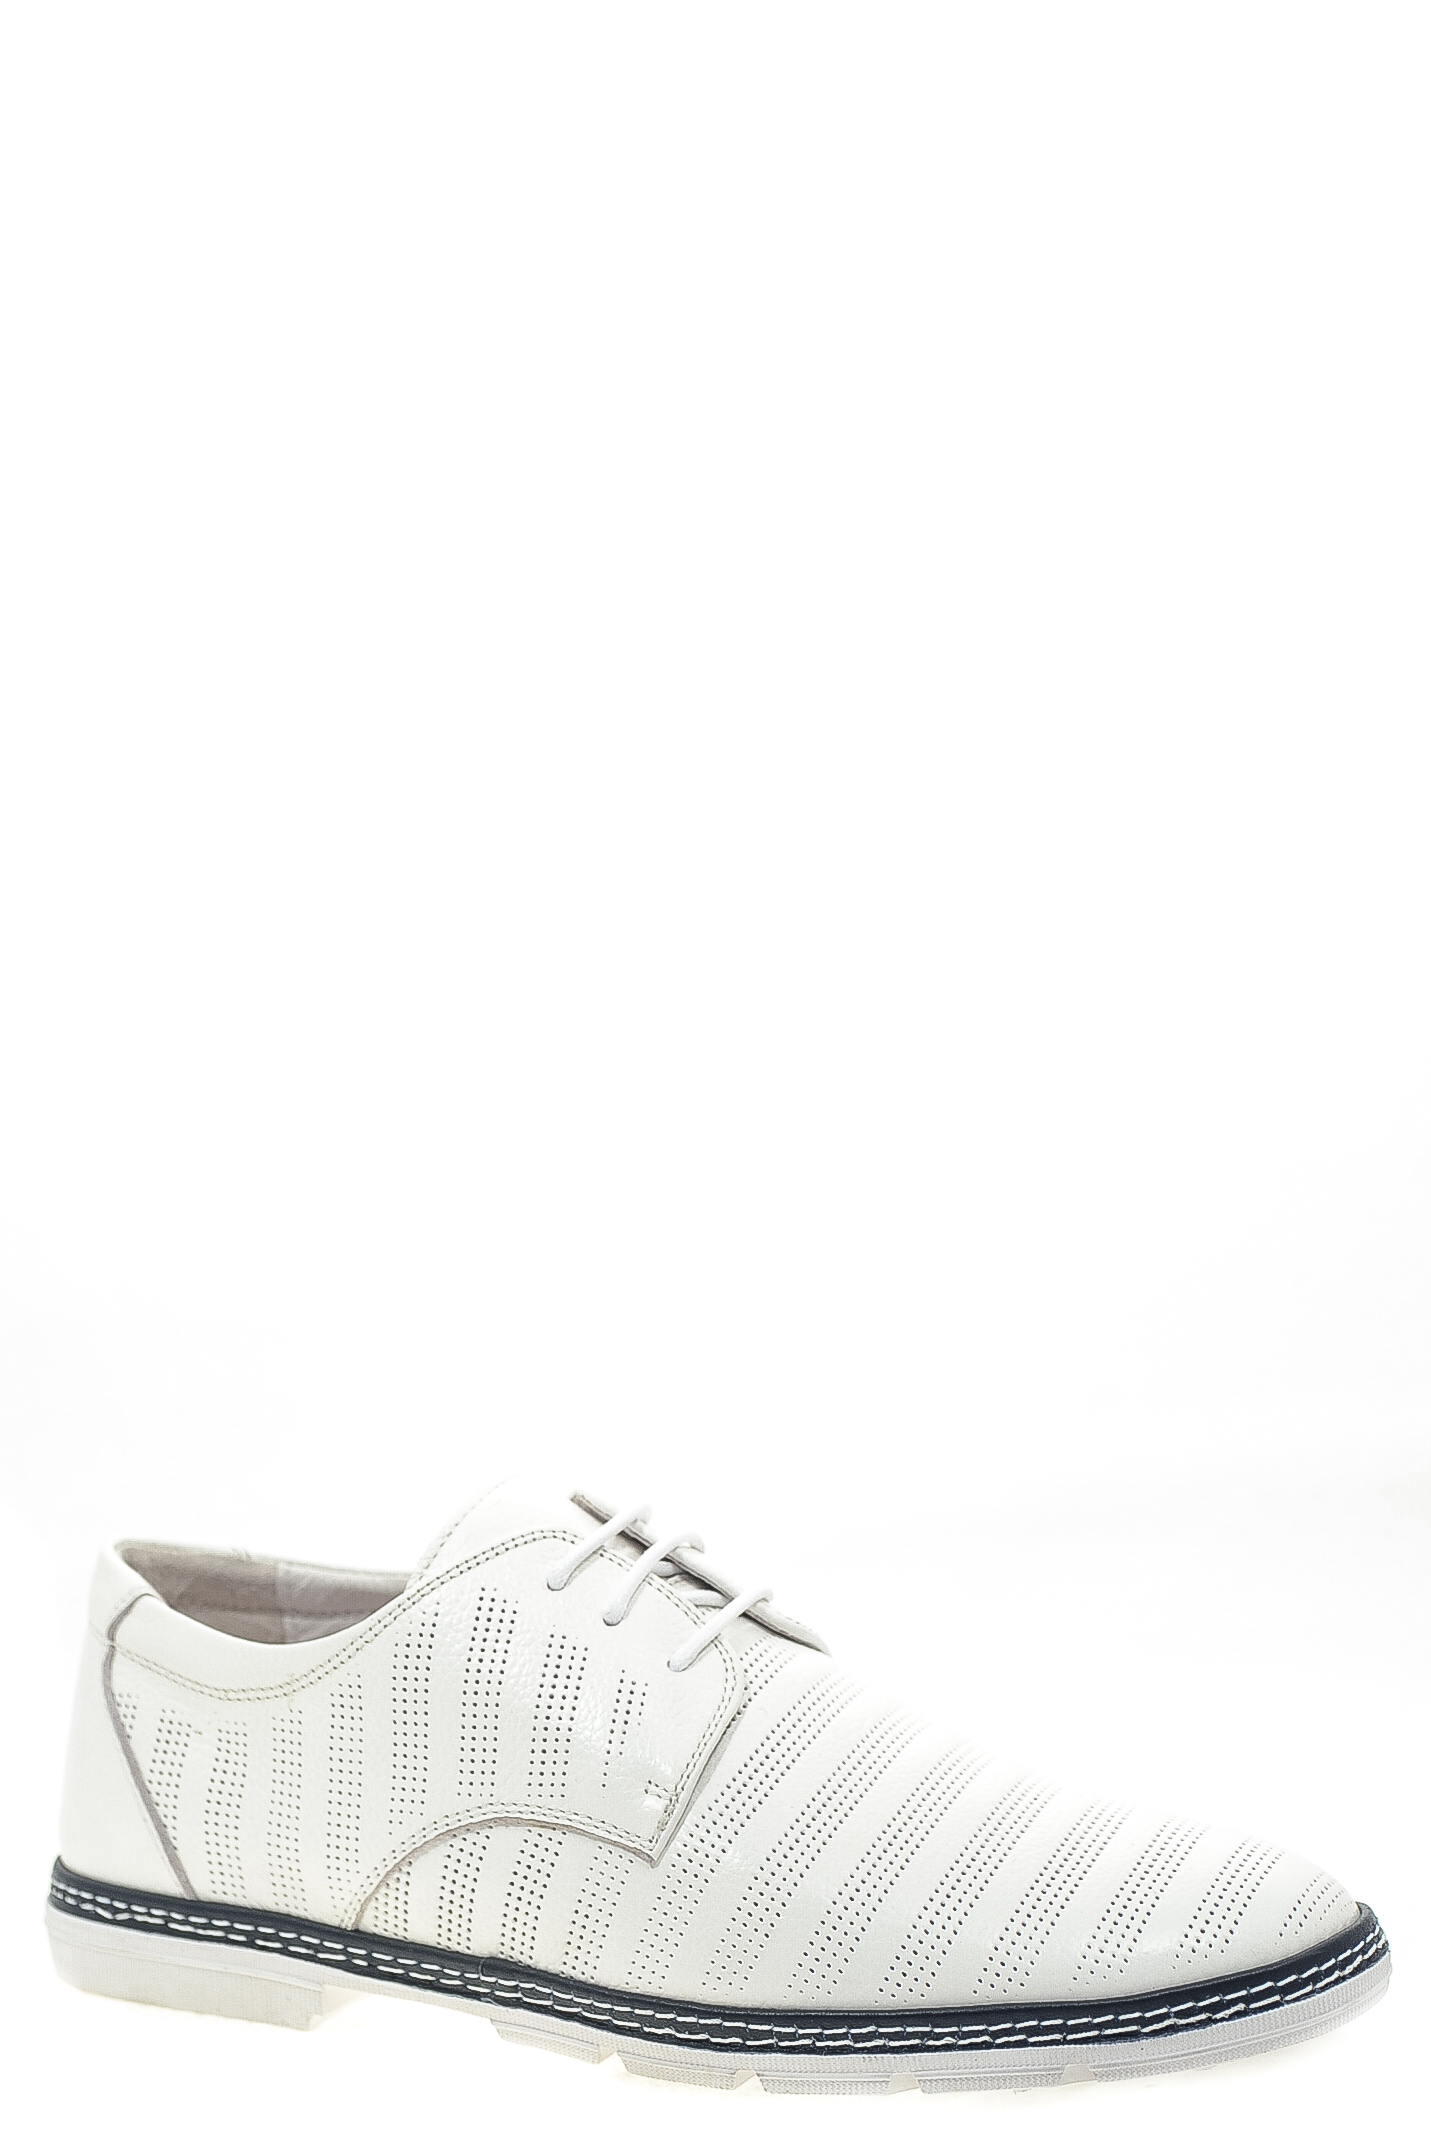 Туфли натуральная кожа Lapostolle AB610-9-C1 цвет белый.